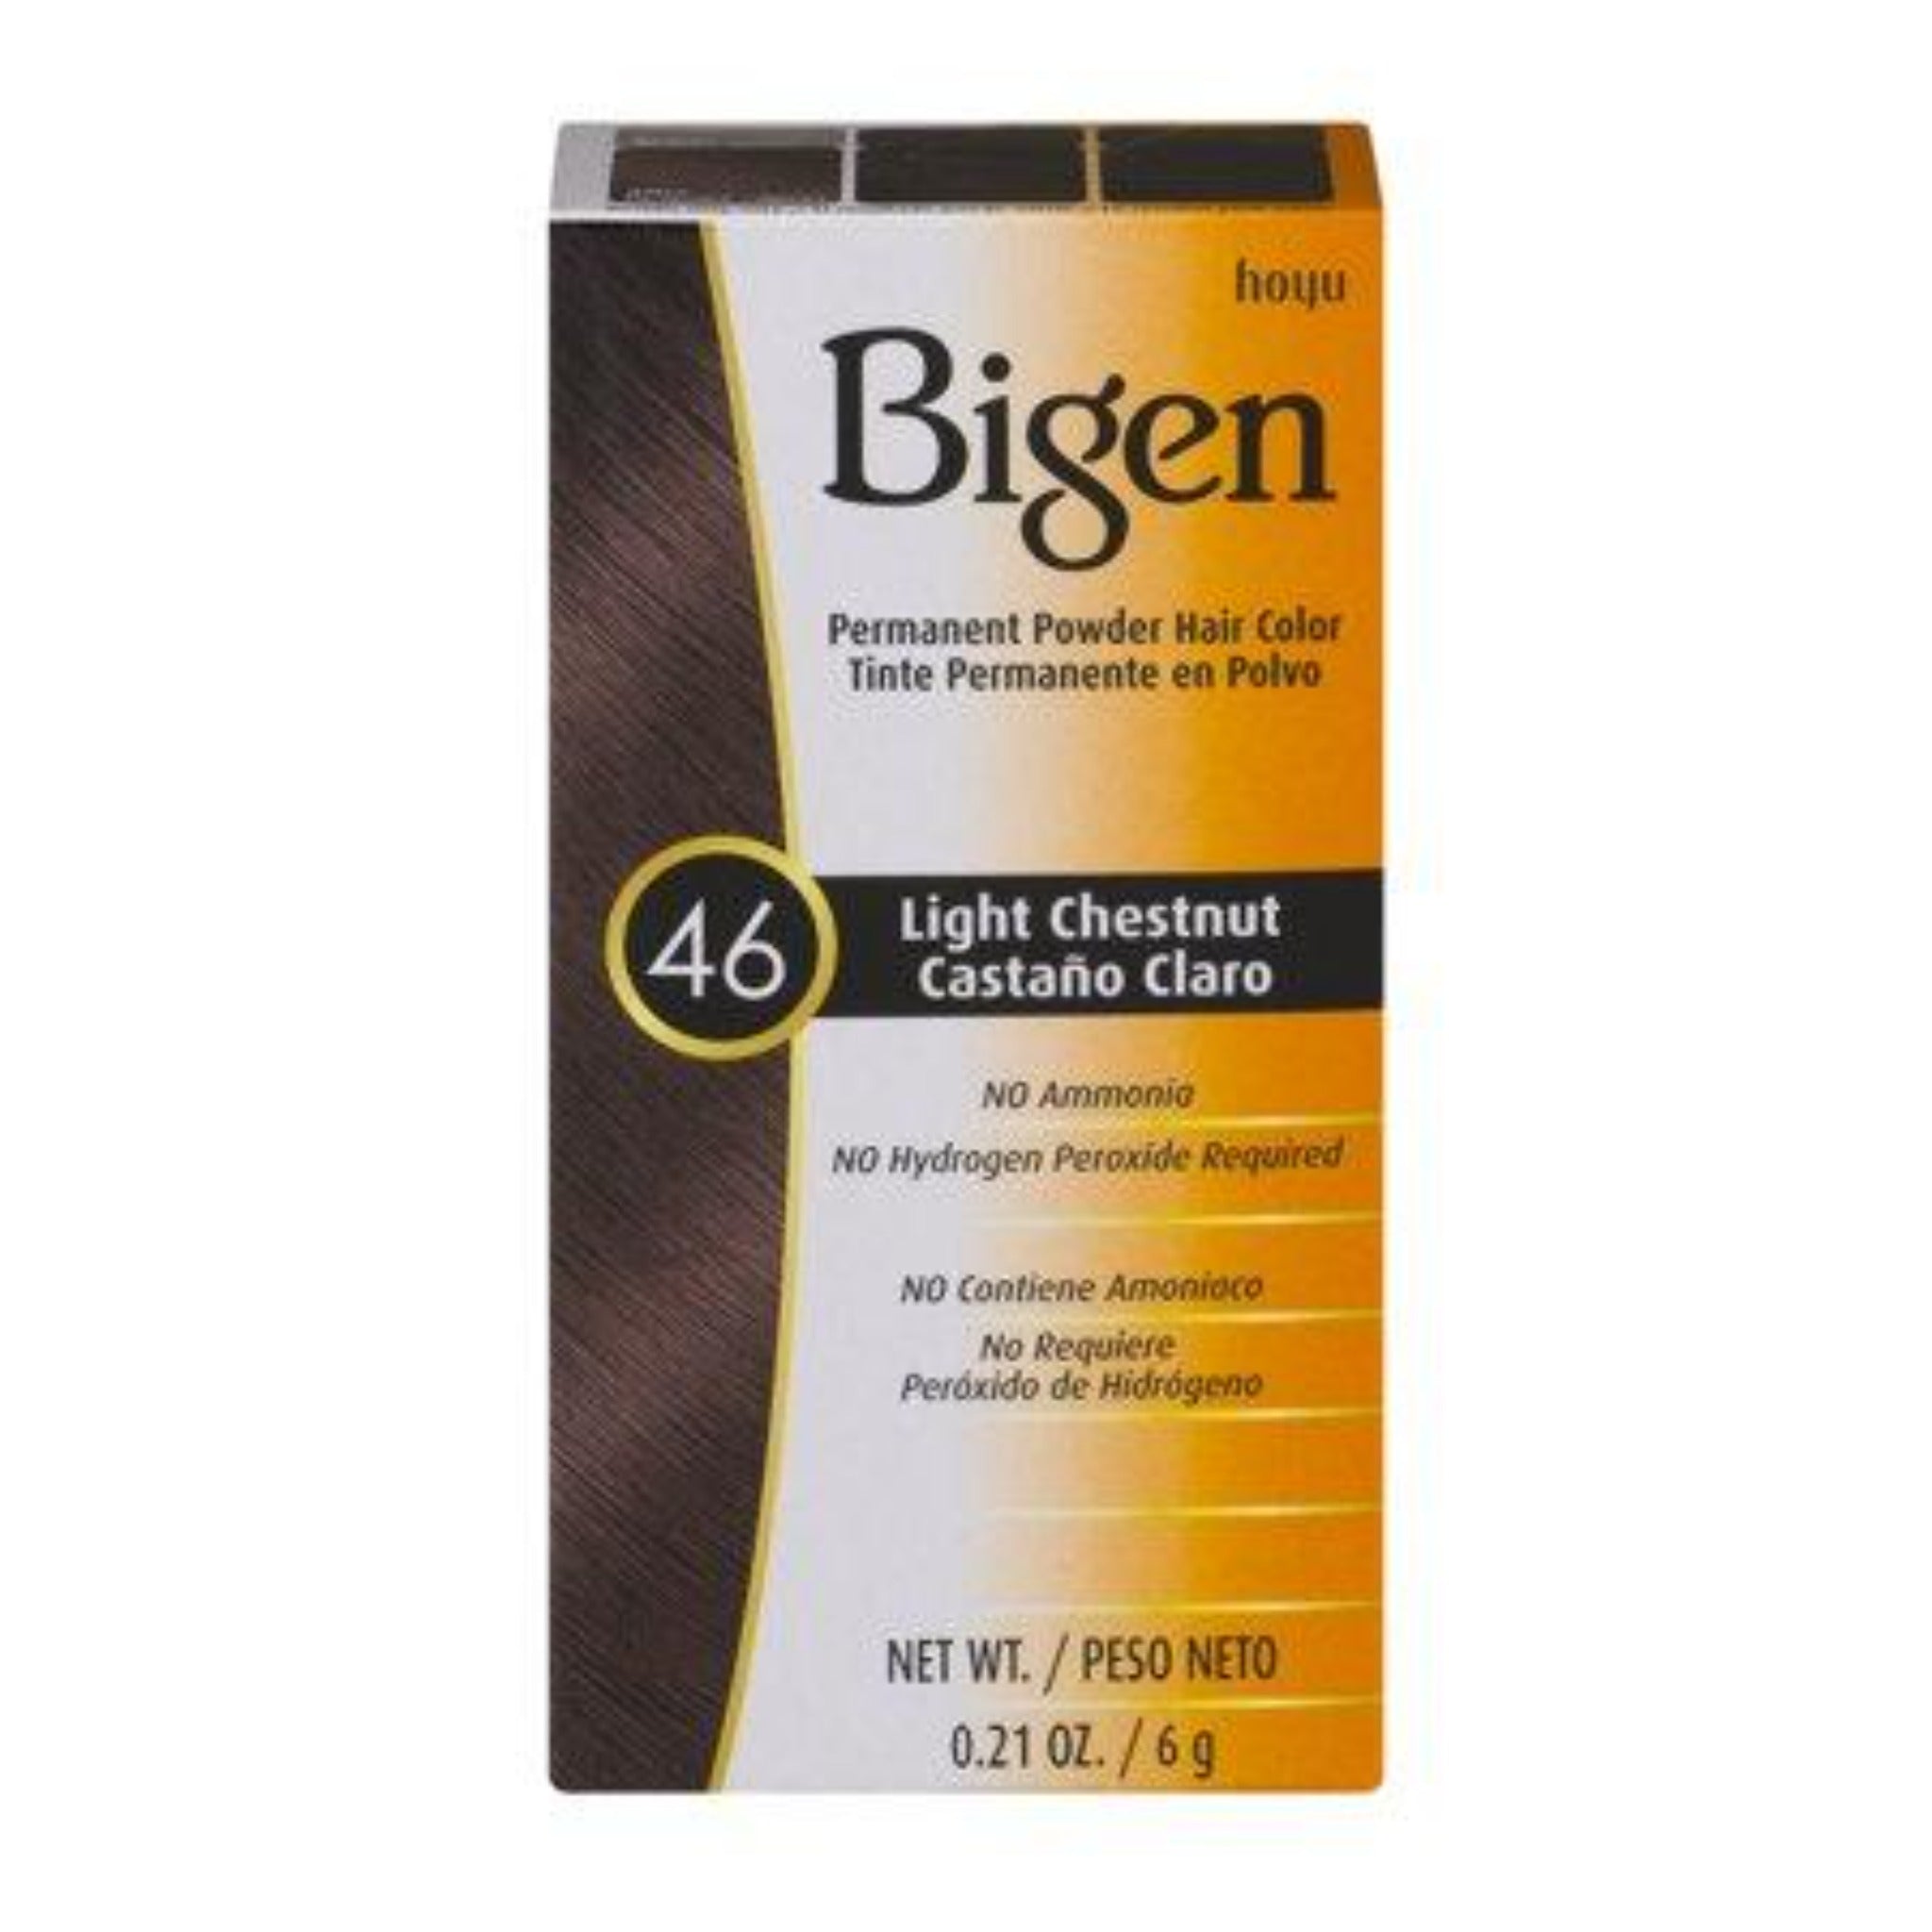 Bigen # 46 Light Chestnut